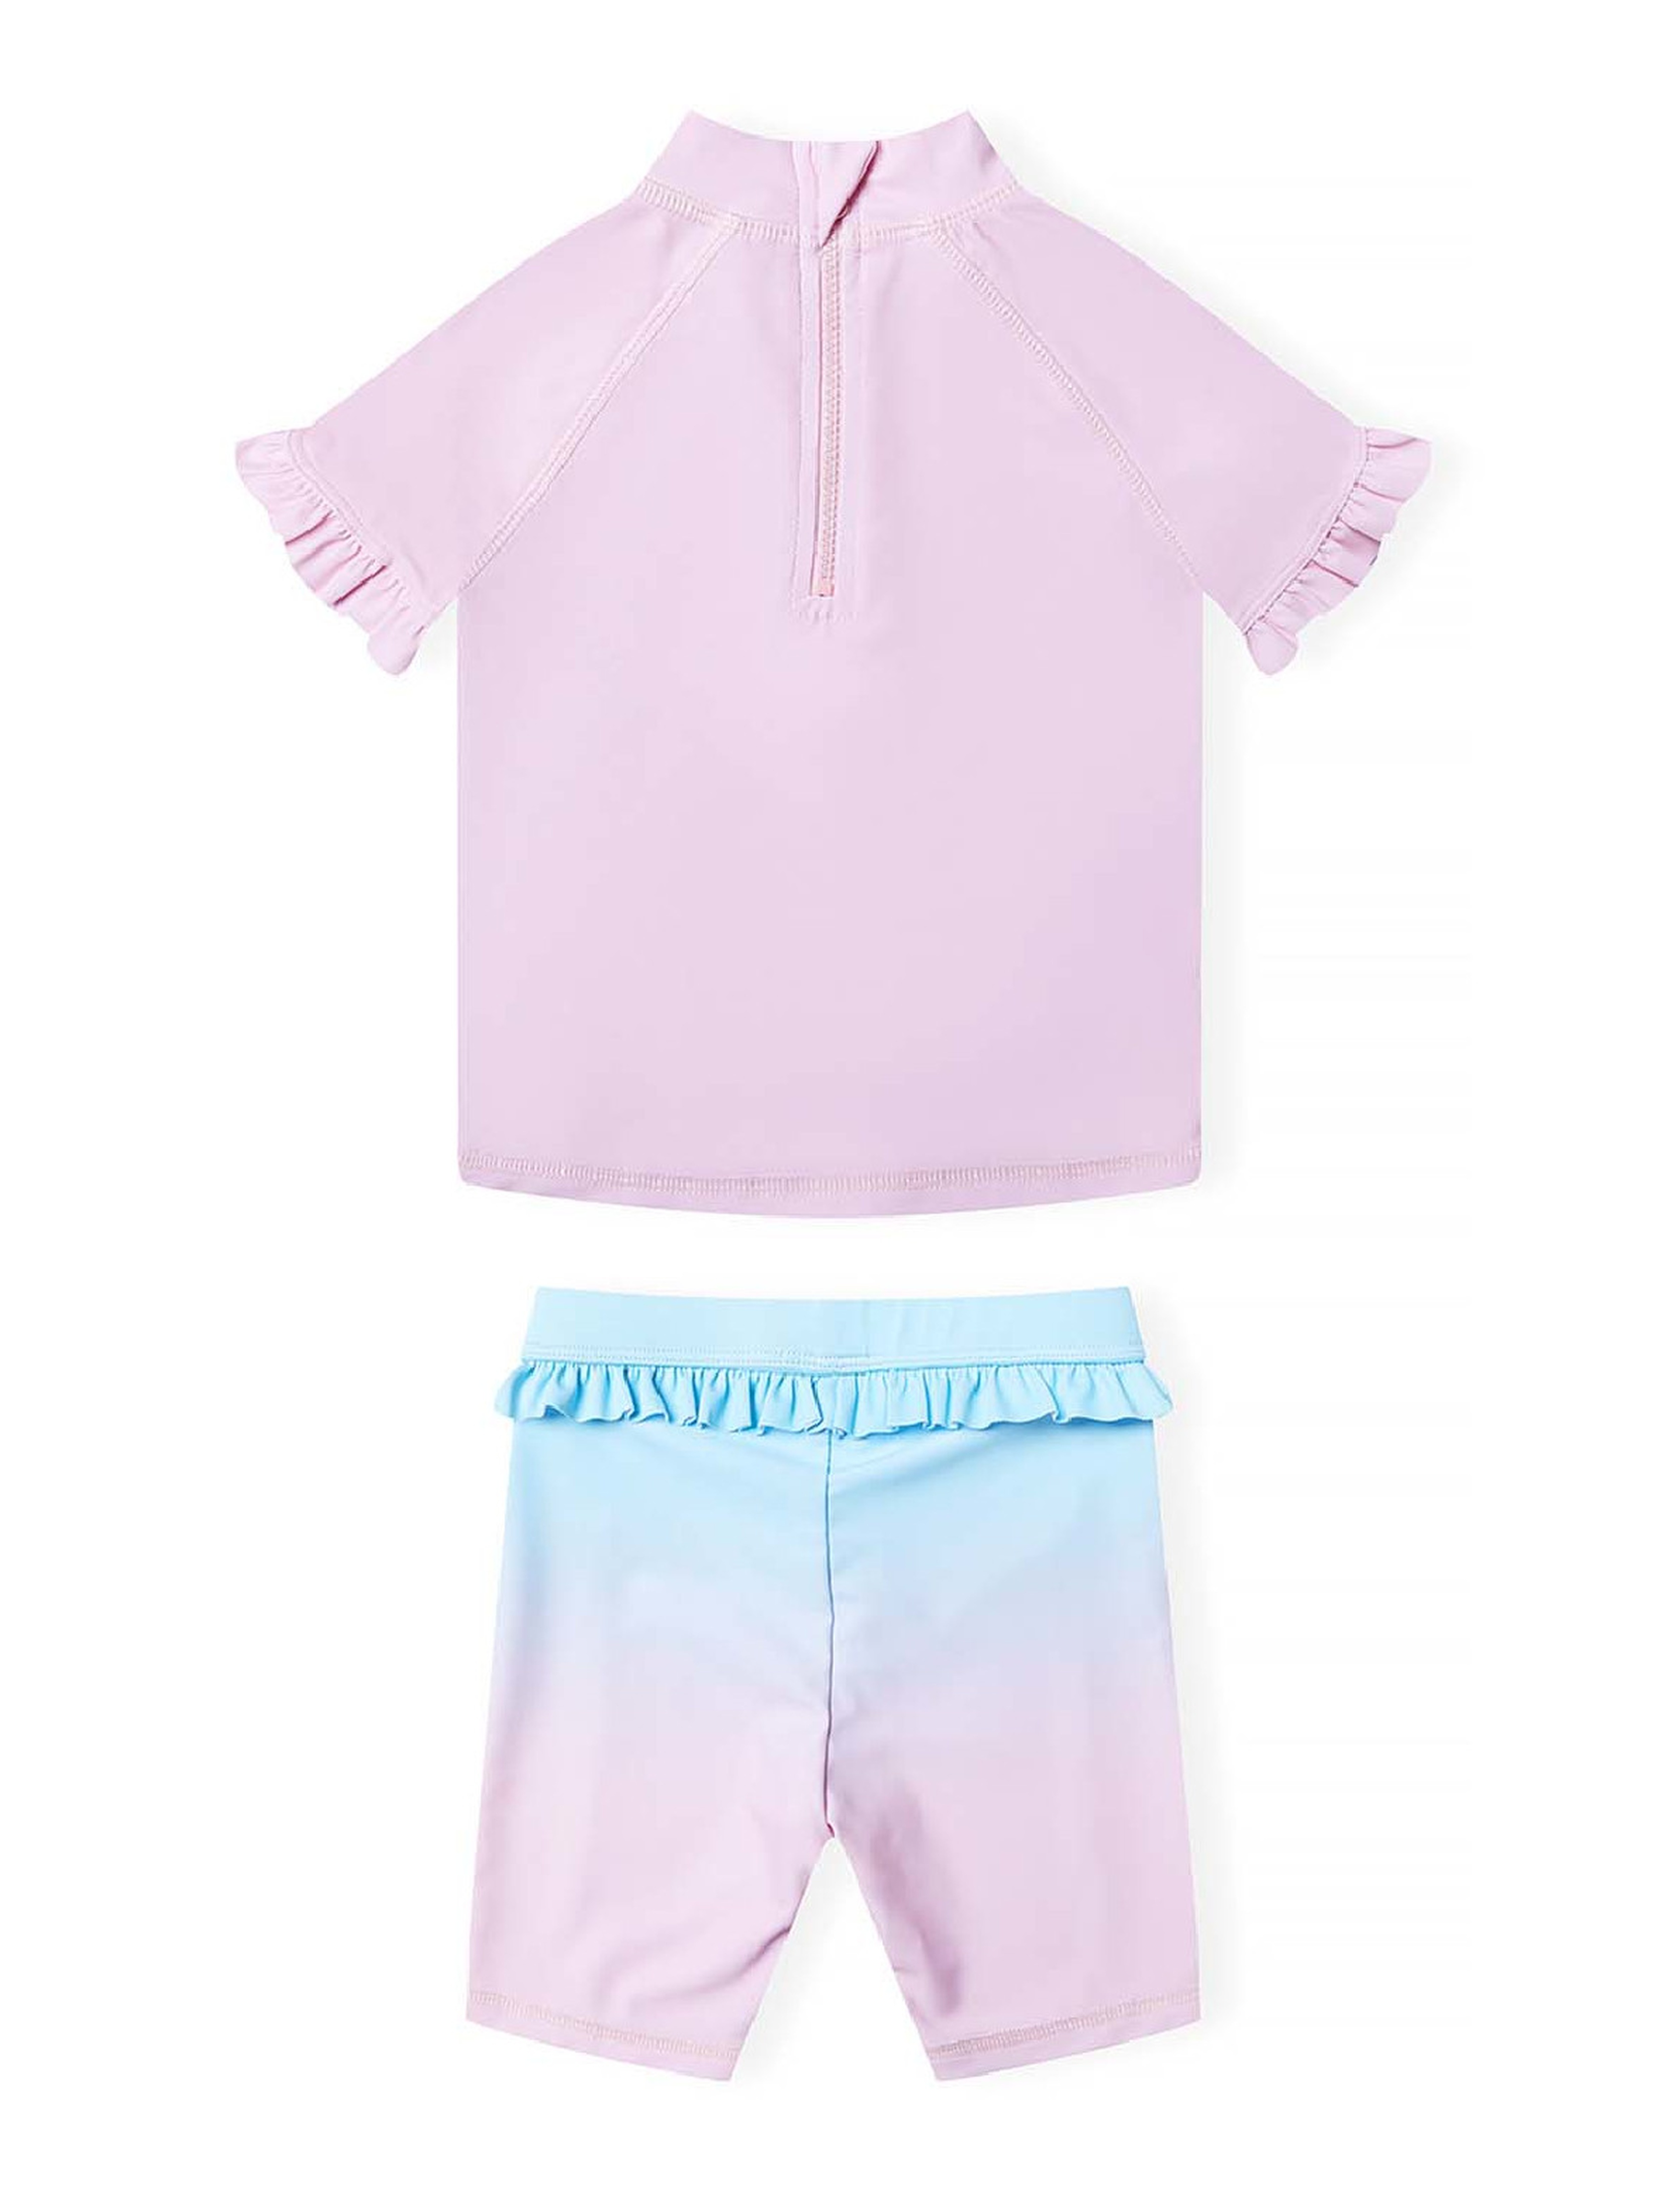 Różowy strój kąpielowy z filtrem UV- koszulka i szorty z falbanką